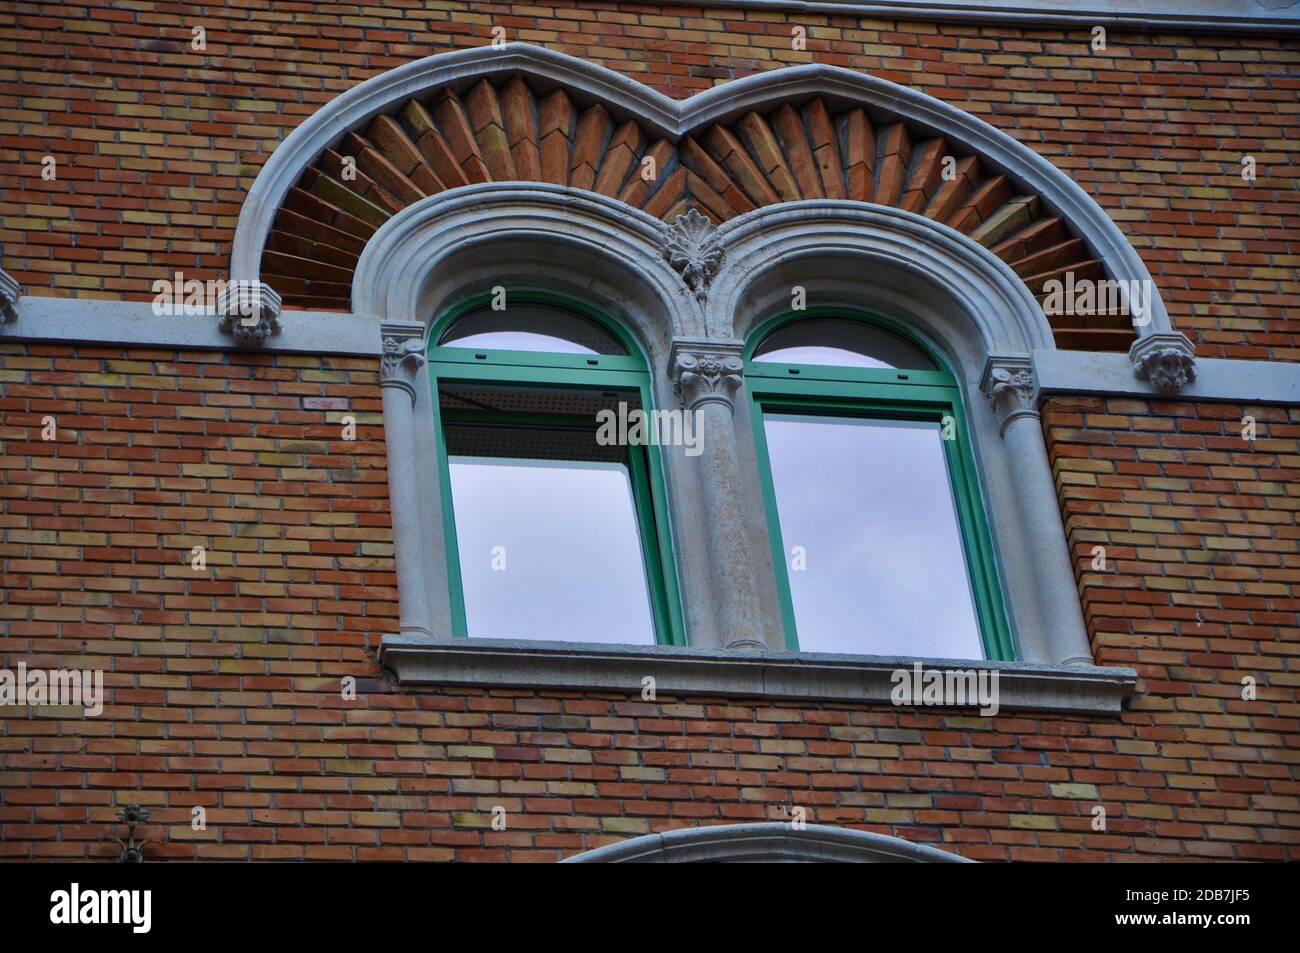 Doppia finestra ad arco su una facciata in mattoni di mura medievali.  Biforium - finestra antica con colonna, elemento architettonico antico,  dettagli decorativi Foto stock - Alamy